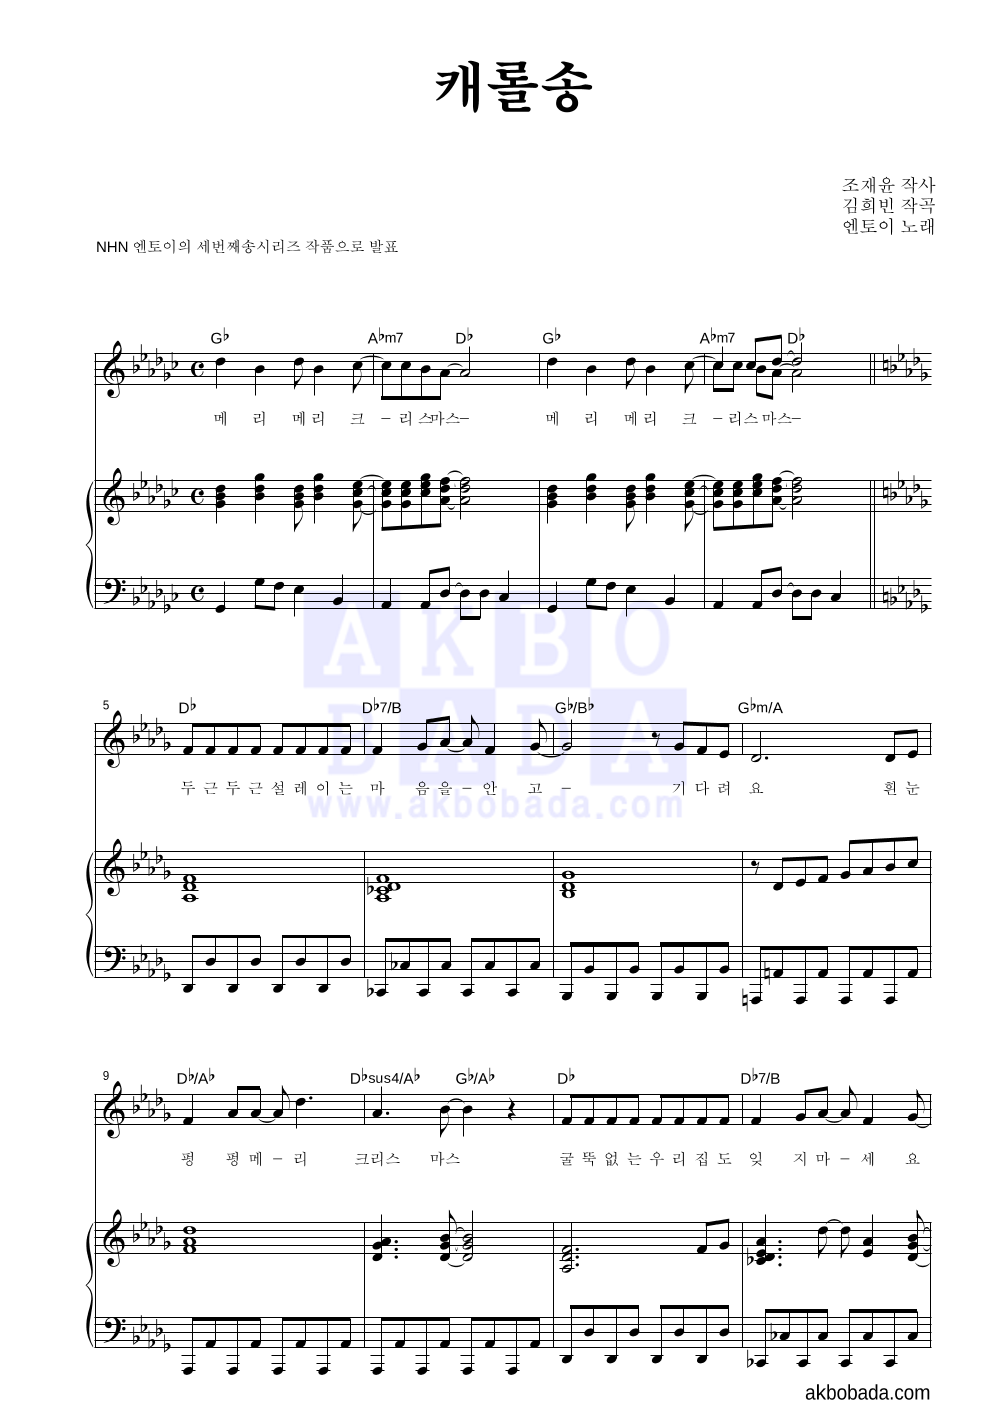 엔토이 - 캐롤송 피아노 3단 악보 